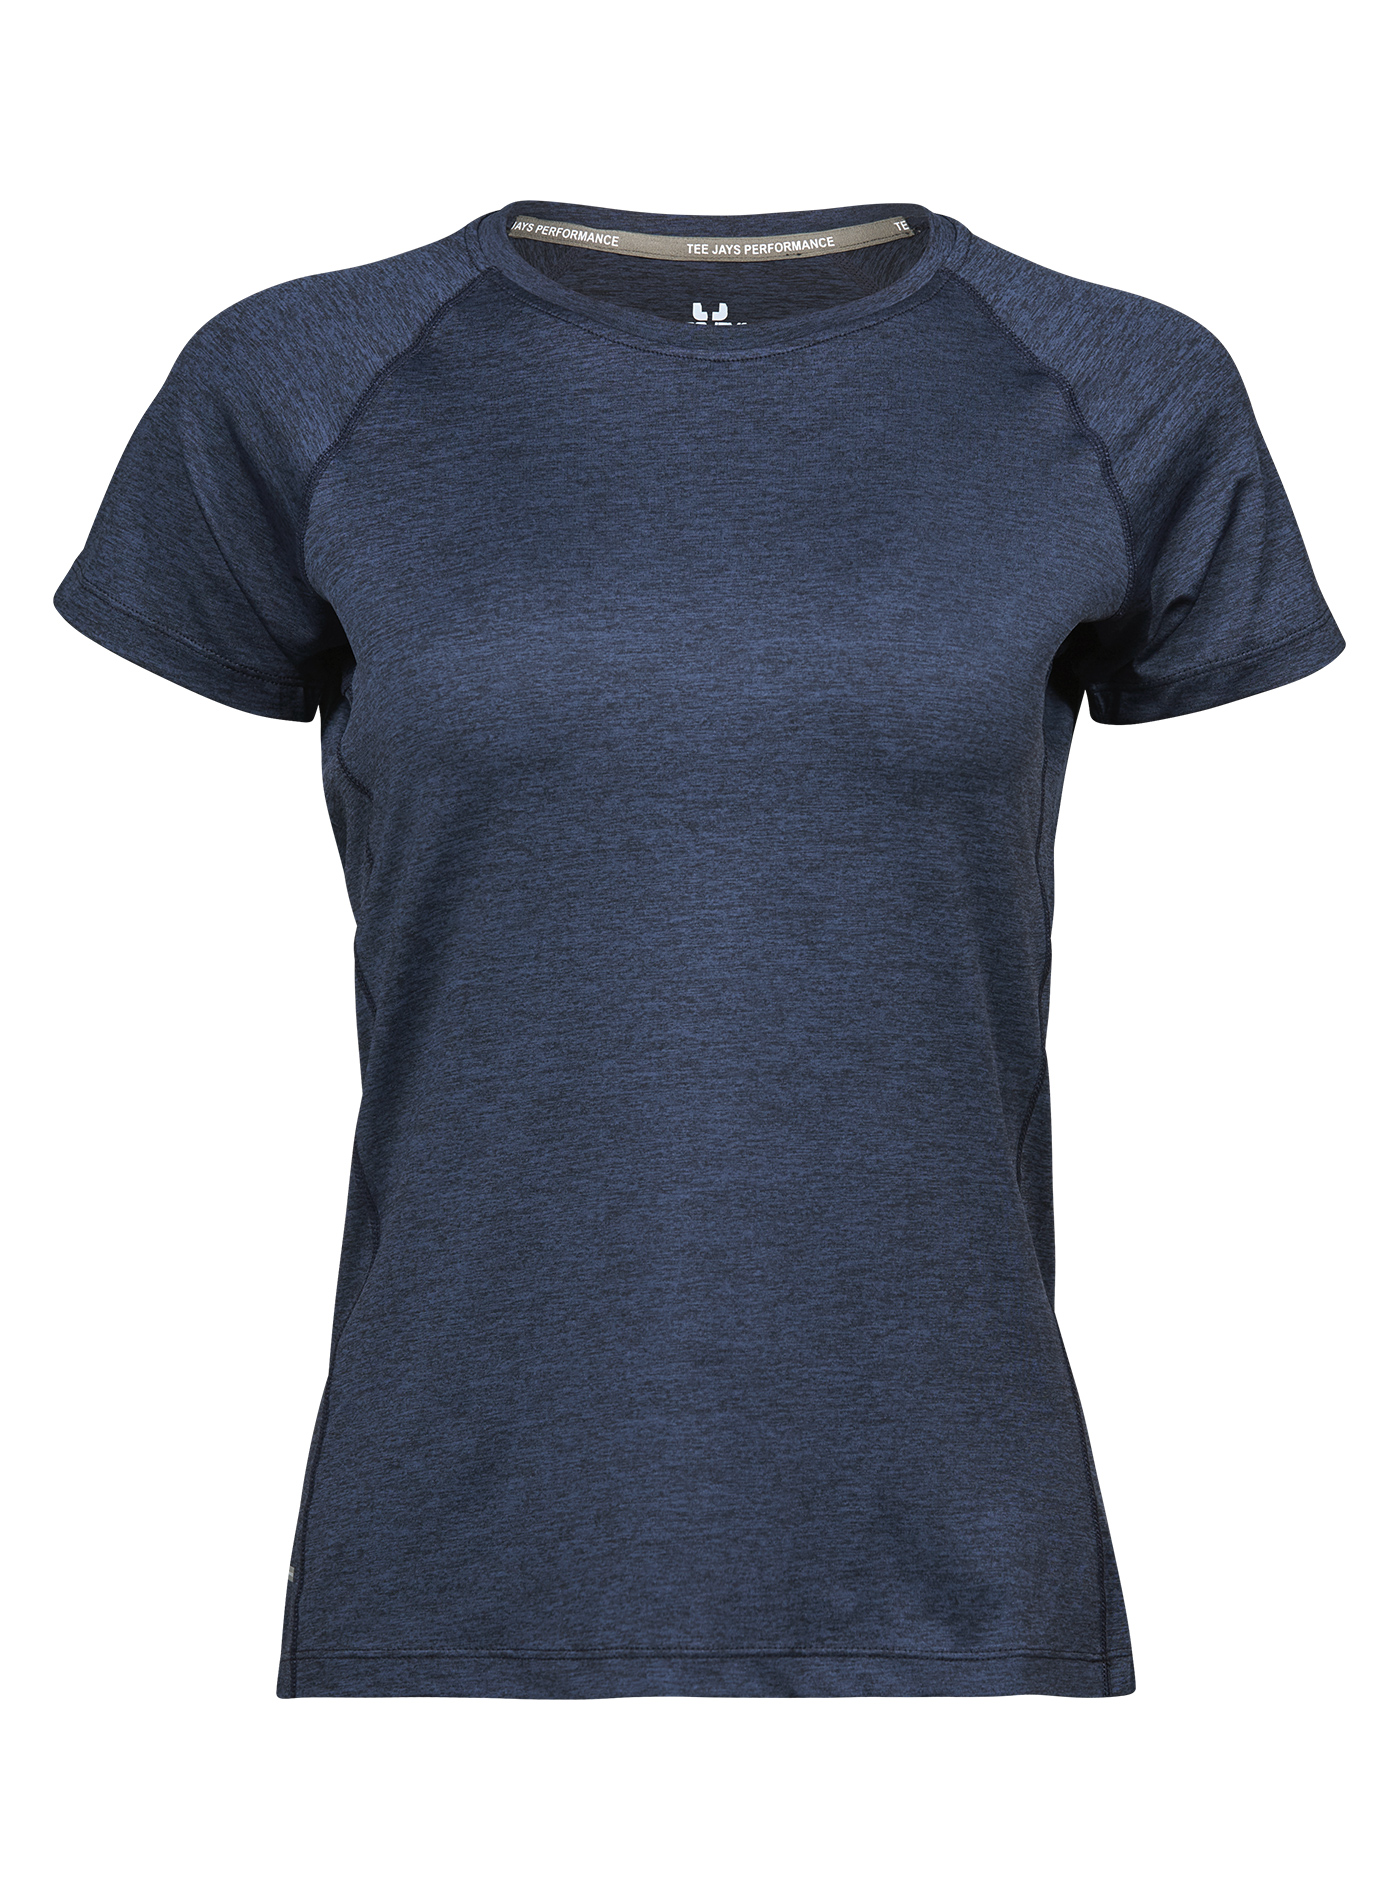 Dámské sportovní tričko cool dry Tee Jays - Temně modrá L